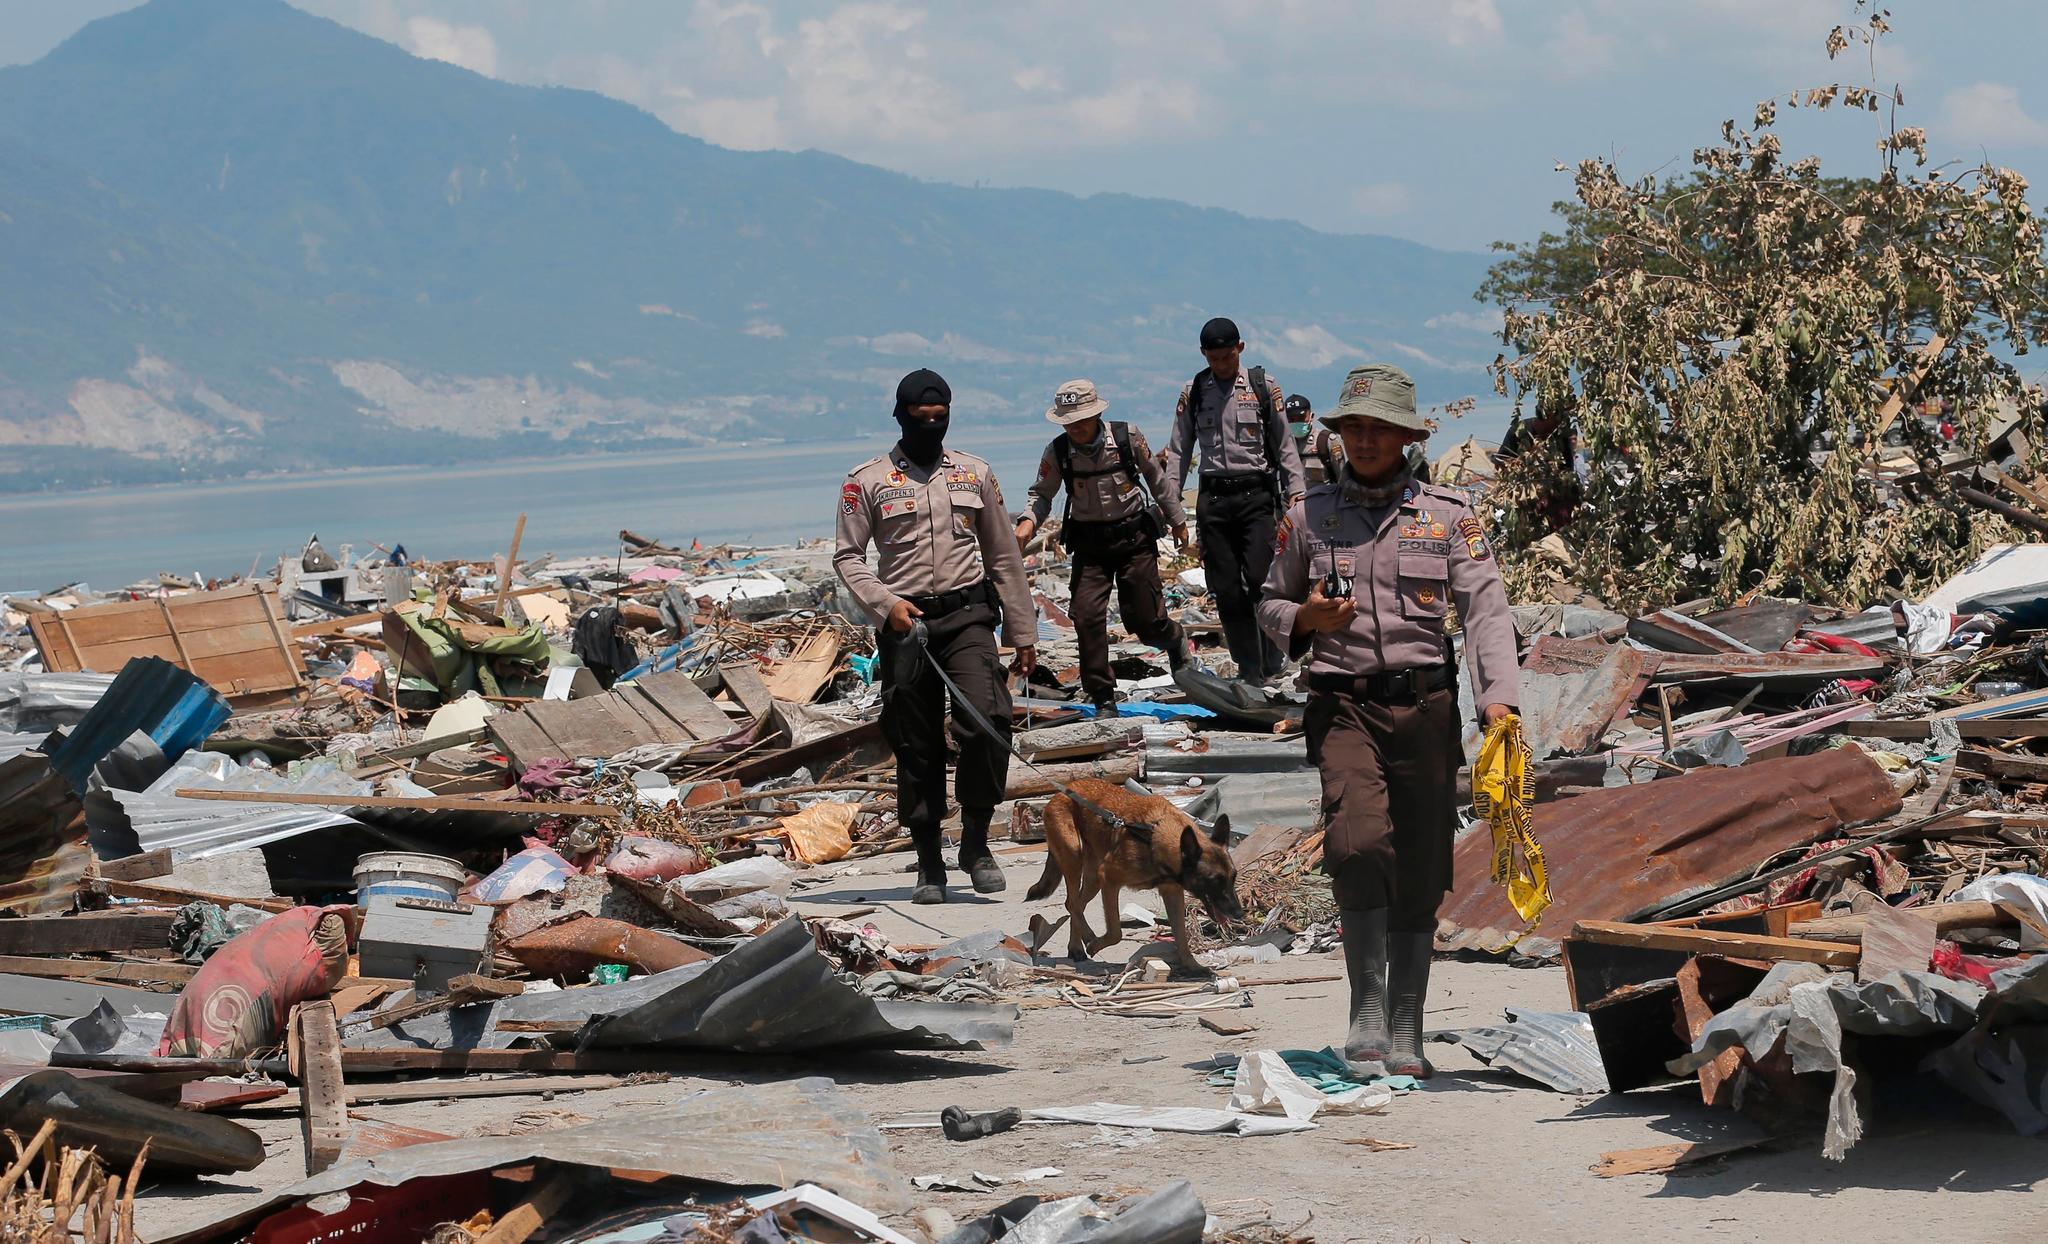  En politienhet fortsetter å søke etter ofre i ruinene etter jordskjelvet og tsunamien. Nødhjelpen kommer sakte inn til områdene som er ødelagt av jordskjelvet. 